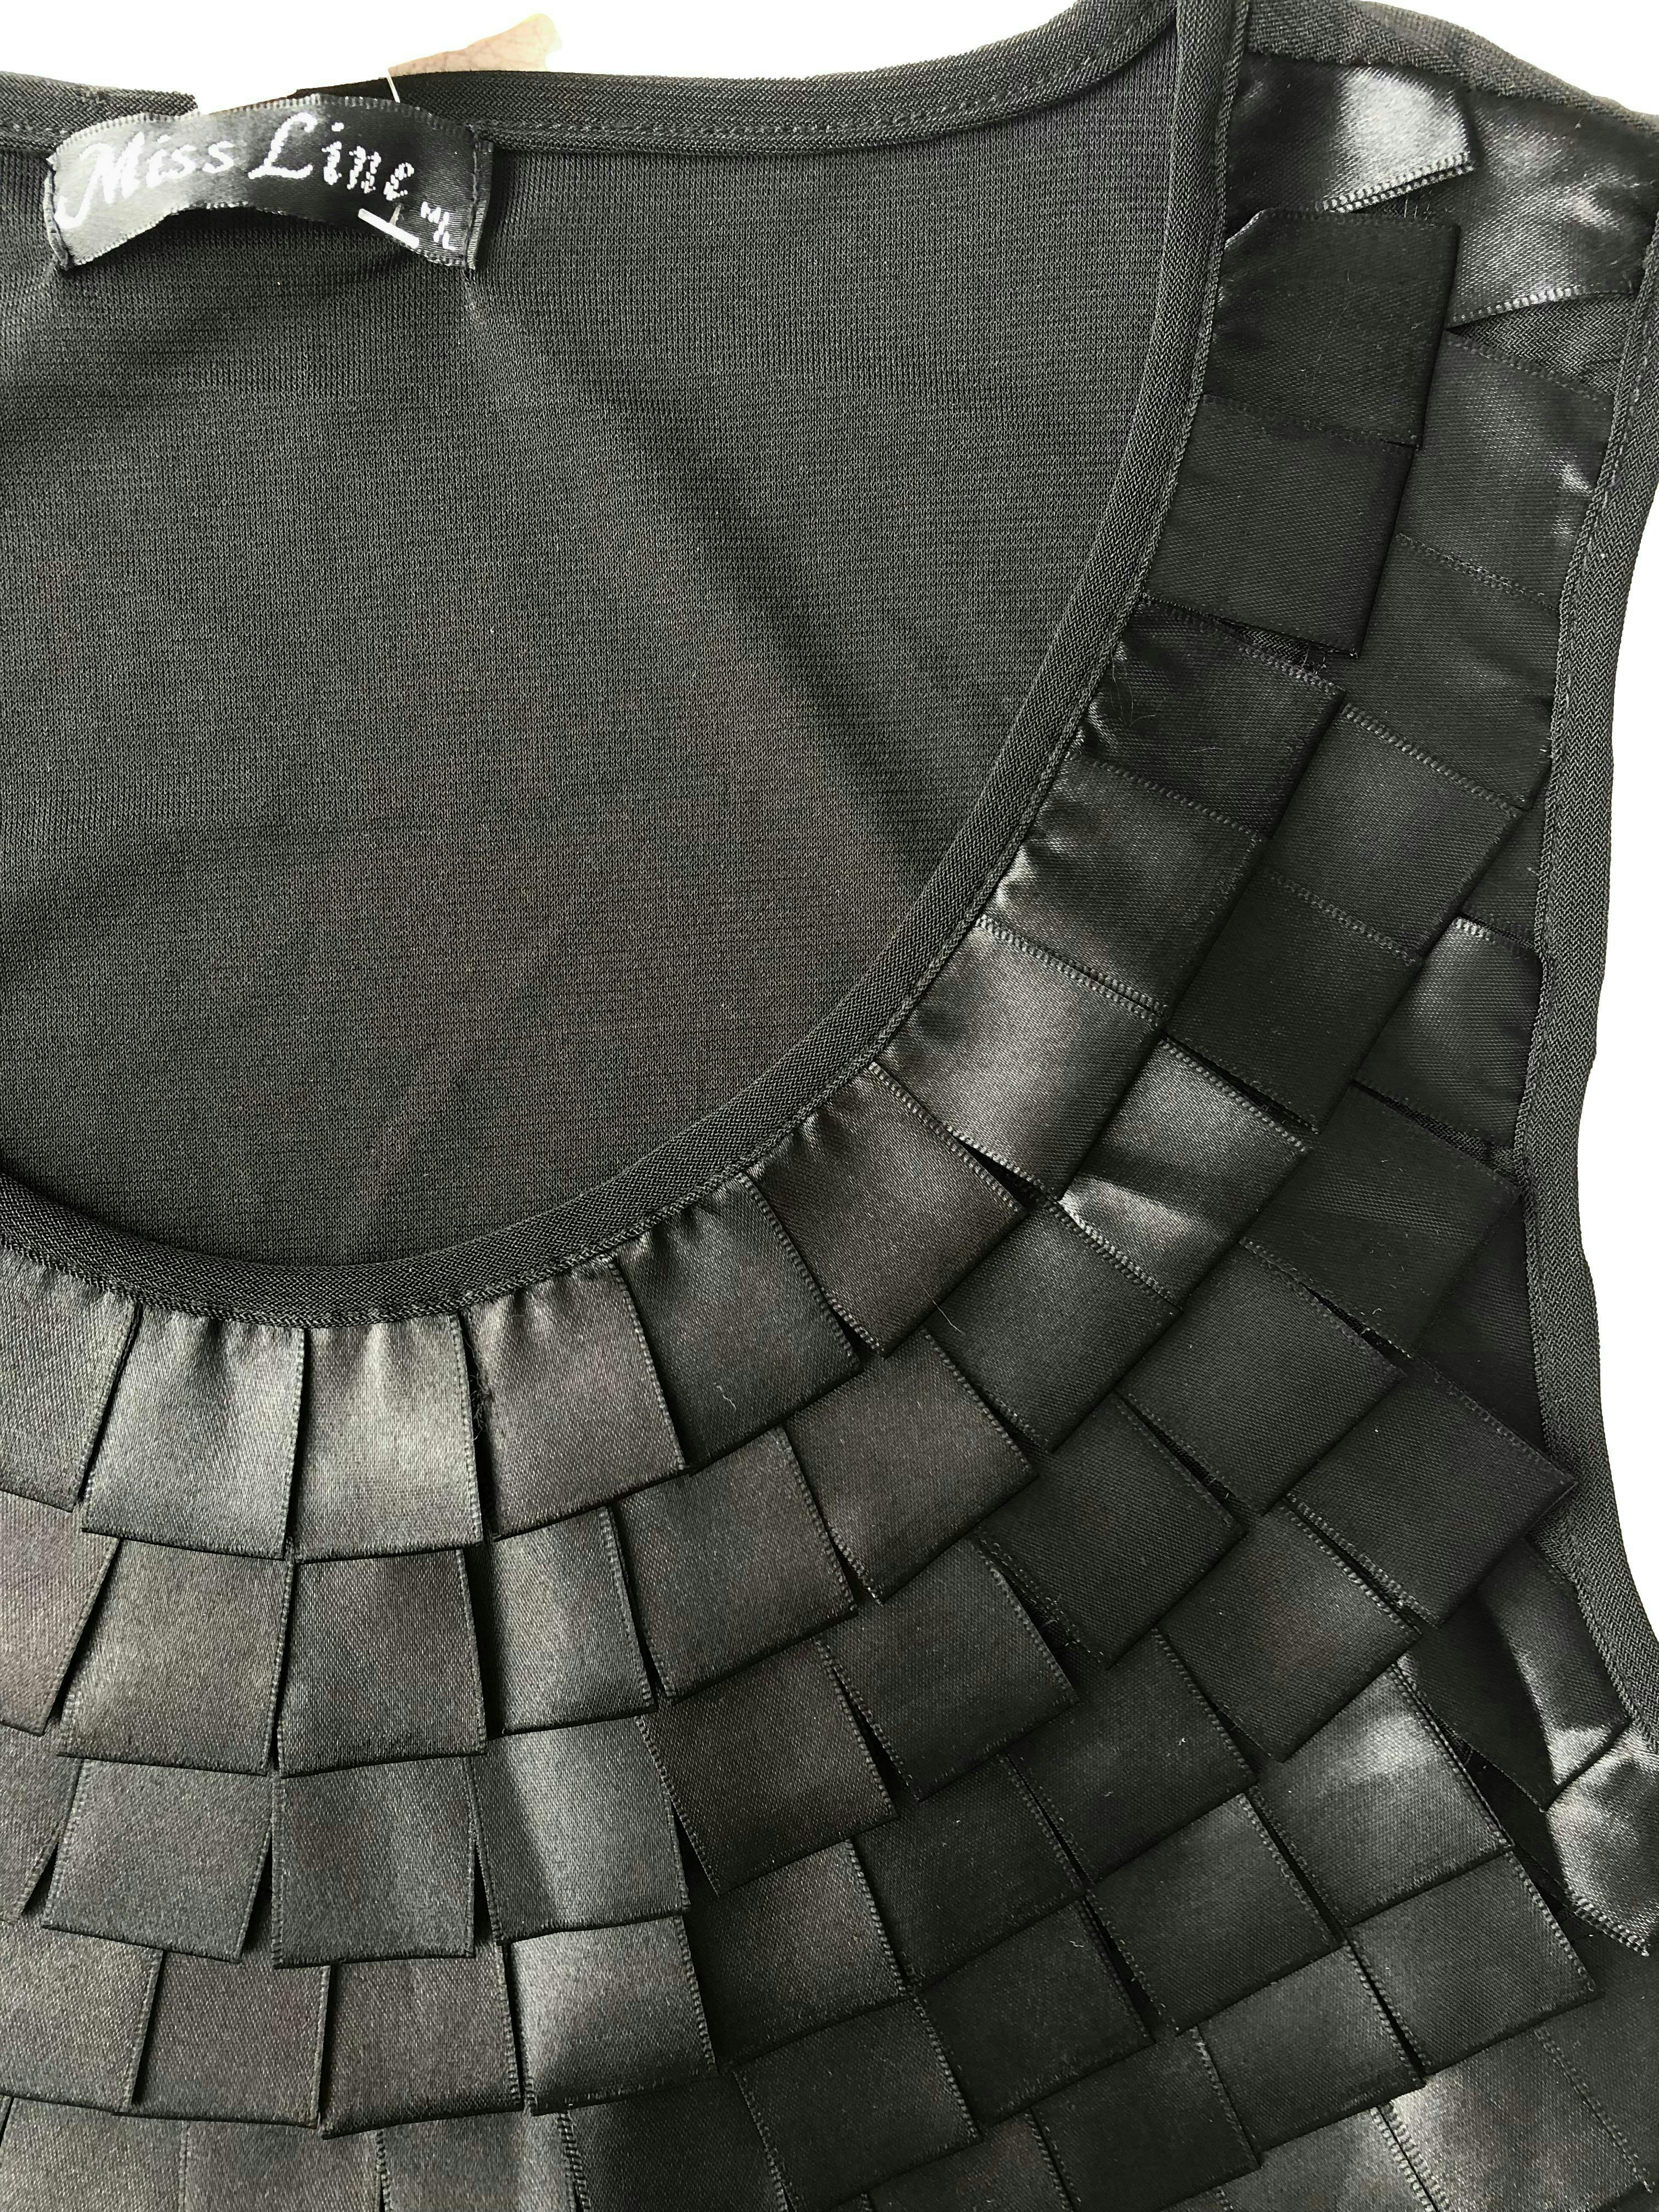 Vestido negro de tul con forro y aplicación de cintos a modo de flecos. Busto 85cm sin estirar, Largo 90cm.